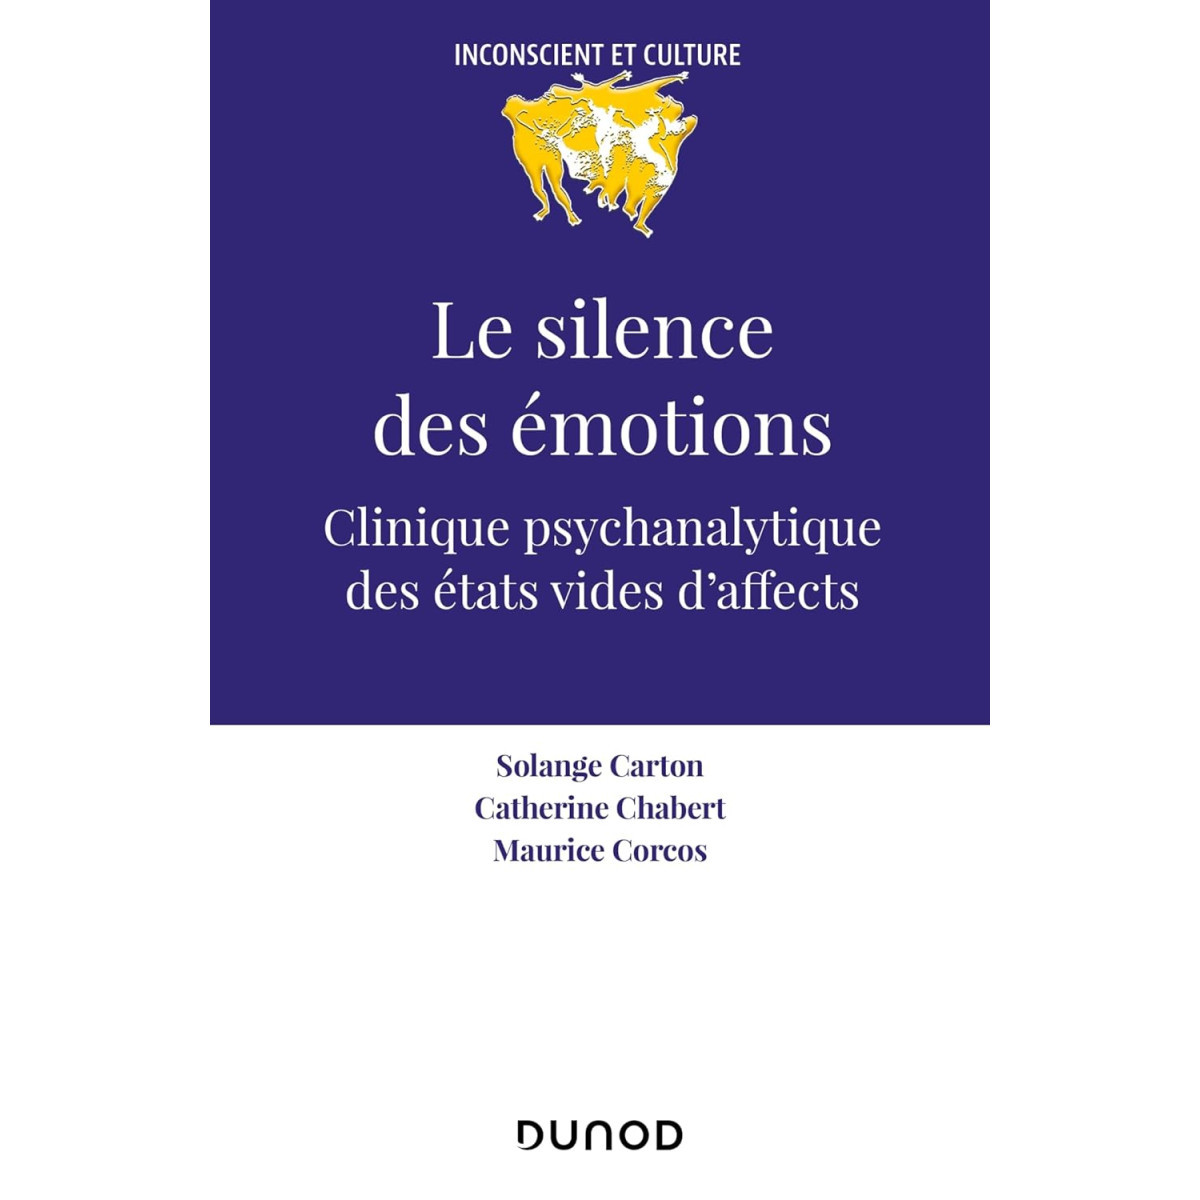 Le silence des émotions: Clinique psychanalytique des états vides d'affects